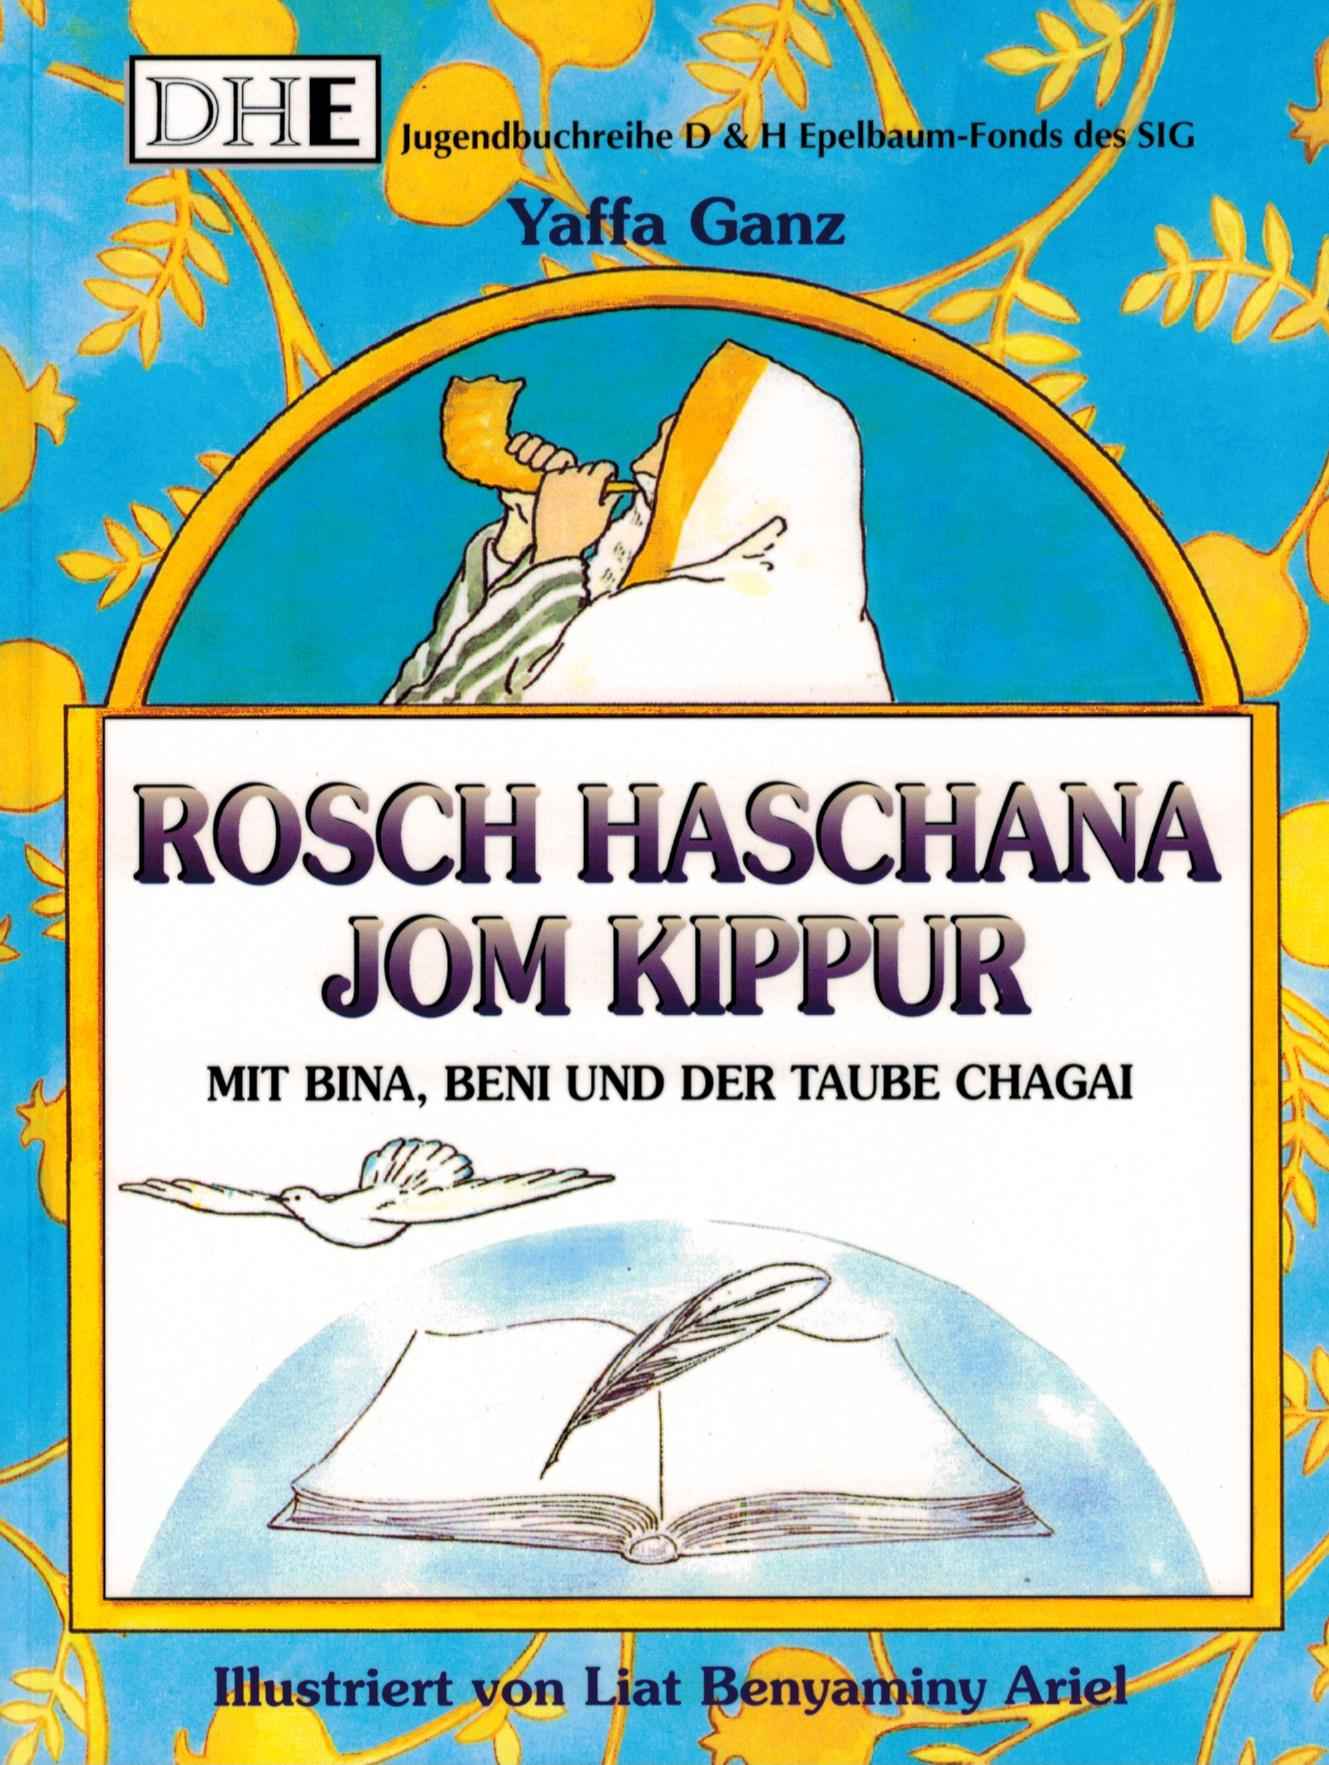 Mit Bina, Beni und der Taube Chagai... Rosch Haschana, Jom Kippur